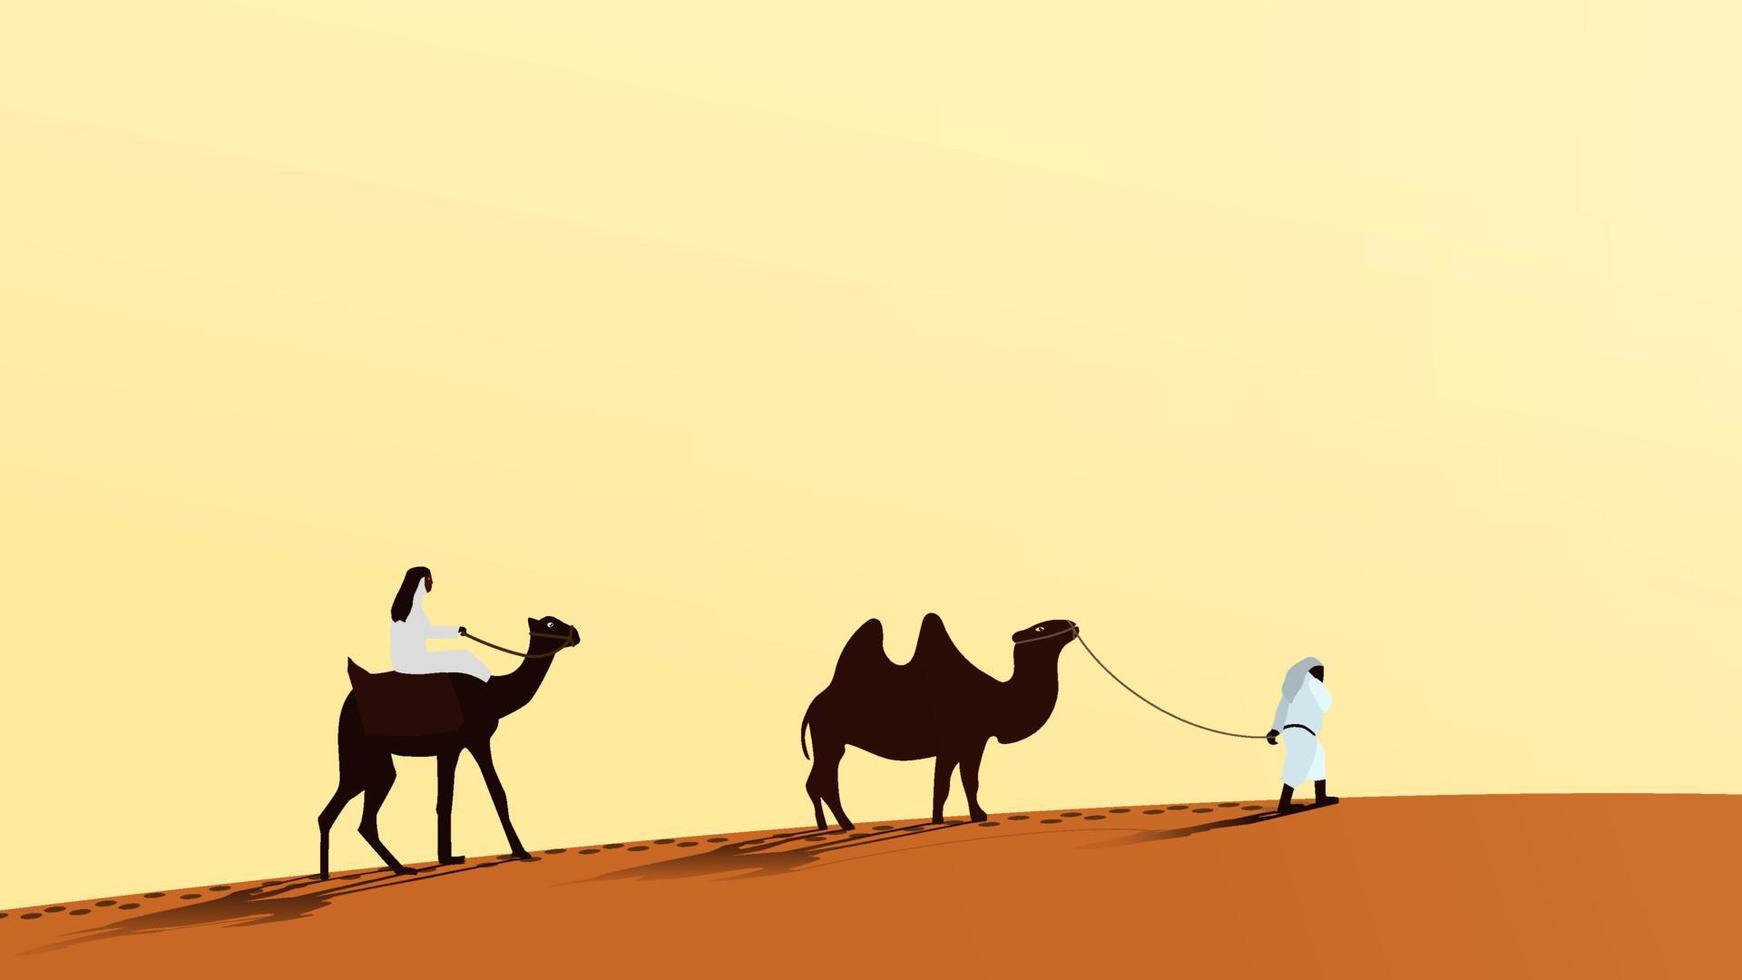 en husvagn av kameler med människor gående längs de öken- sand. en man rider en kamel. de andra person leder de kamel över de koppel. vektor eps10.